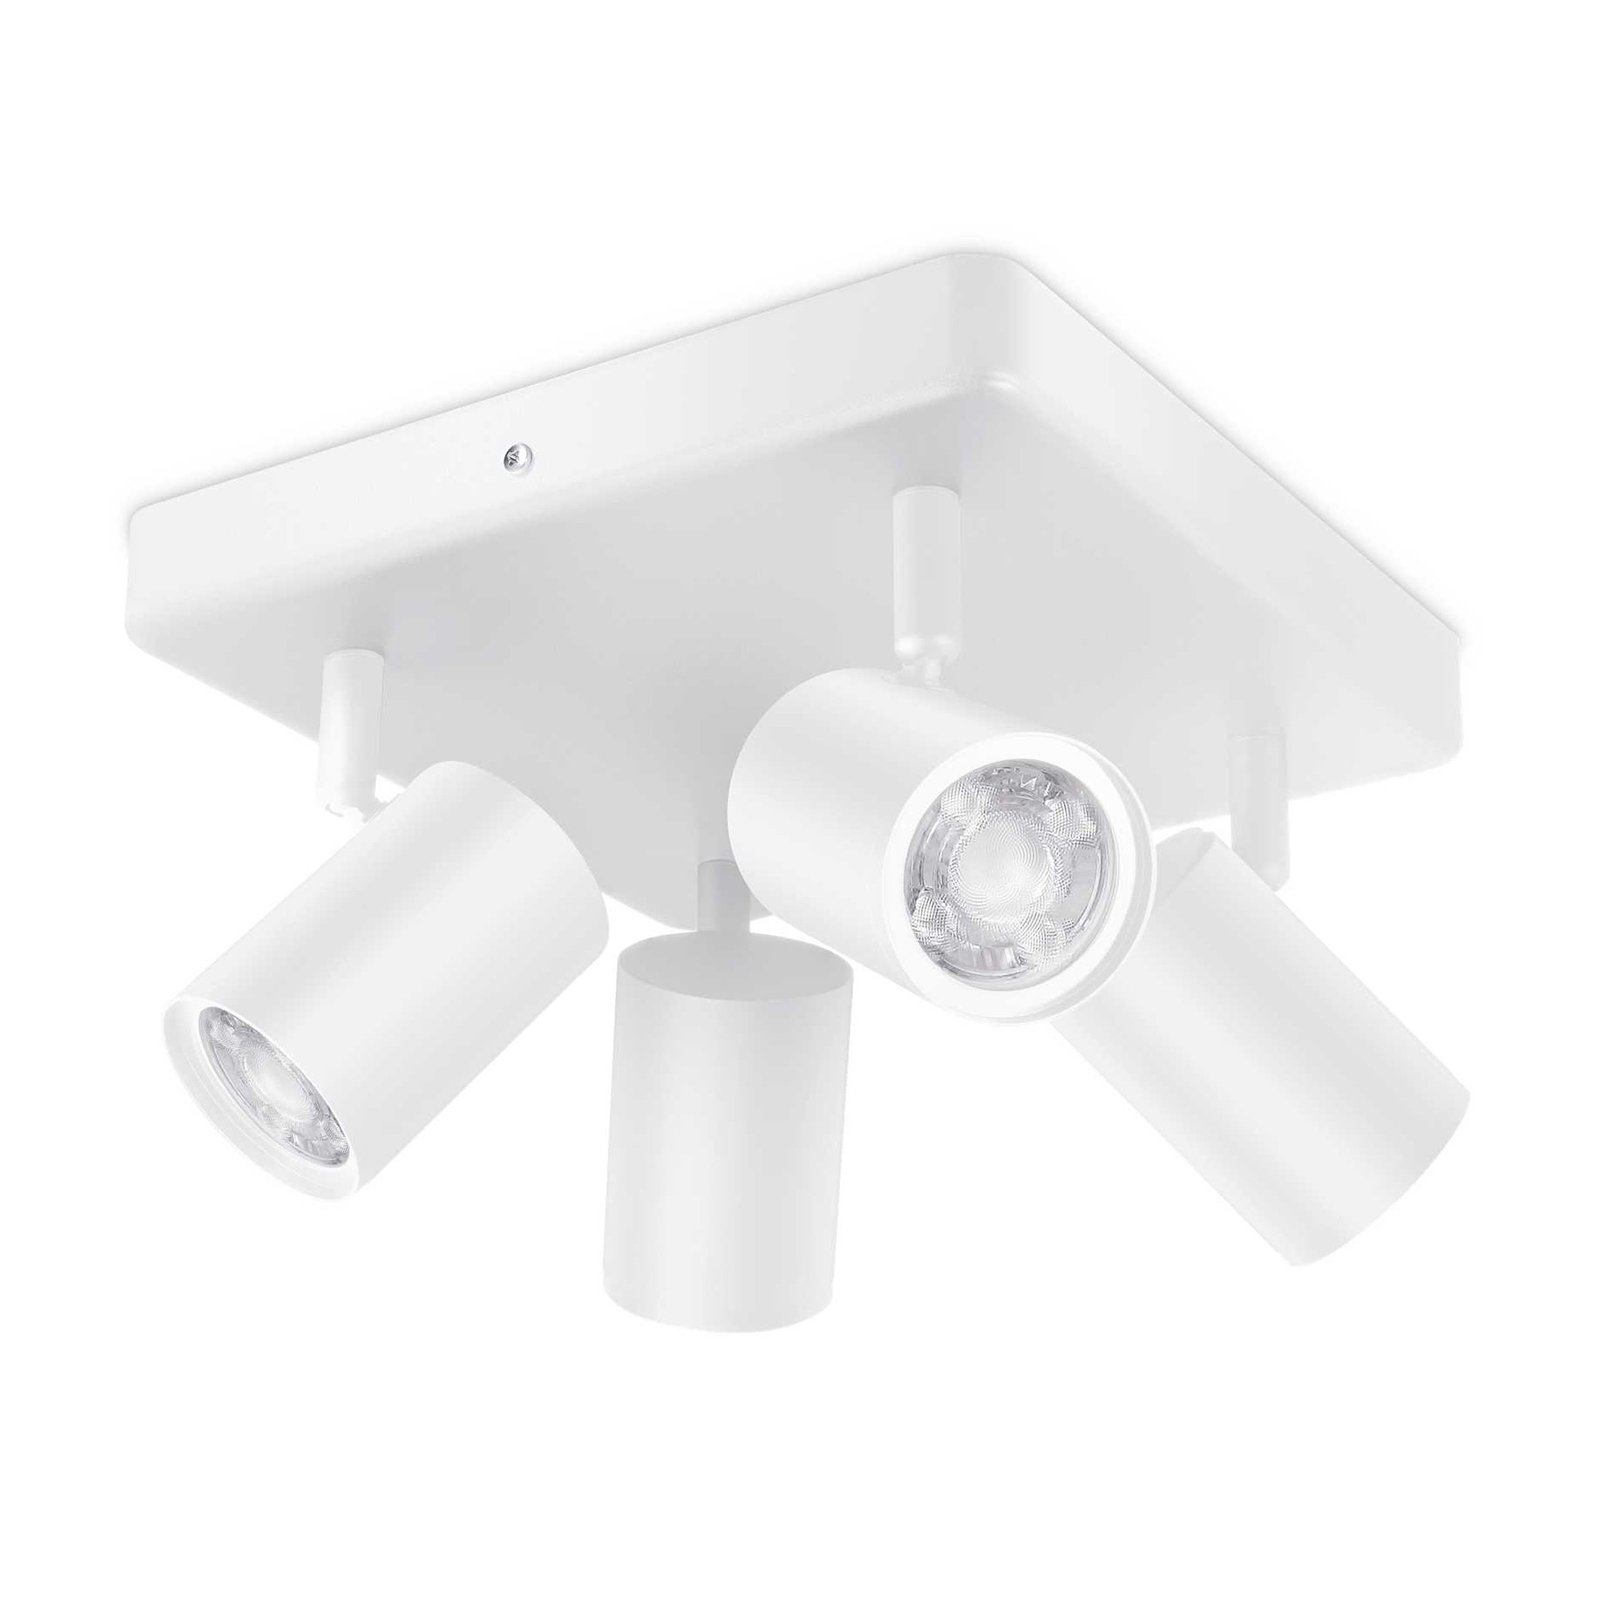 WiZ spot pour plafond LED Imageo, 4fl carré blanc